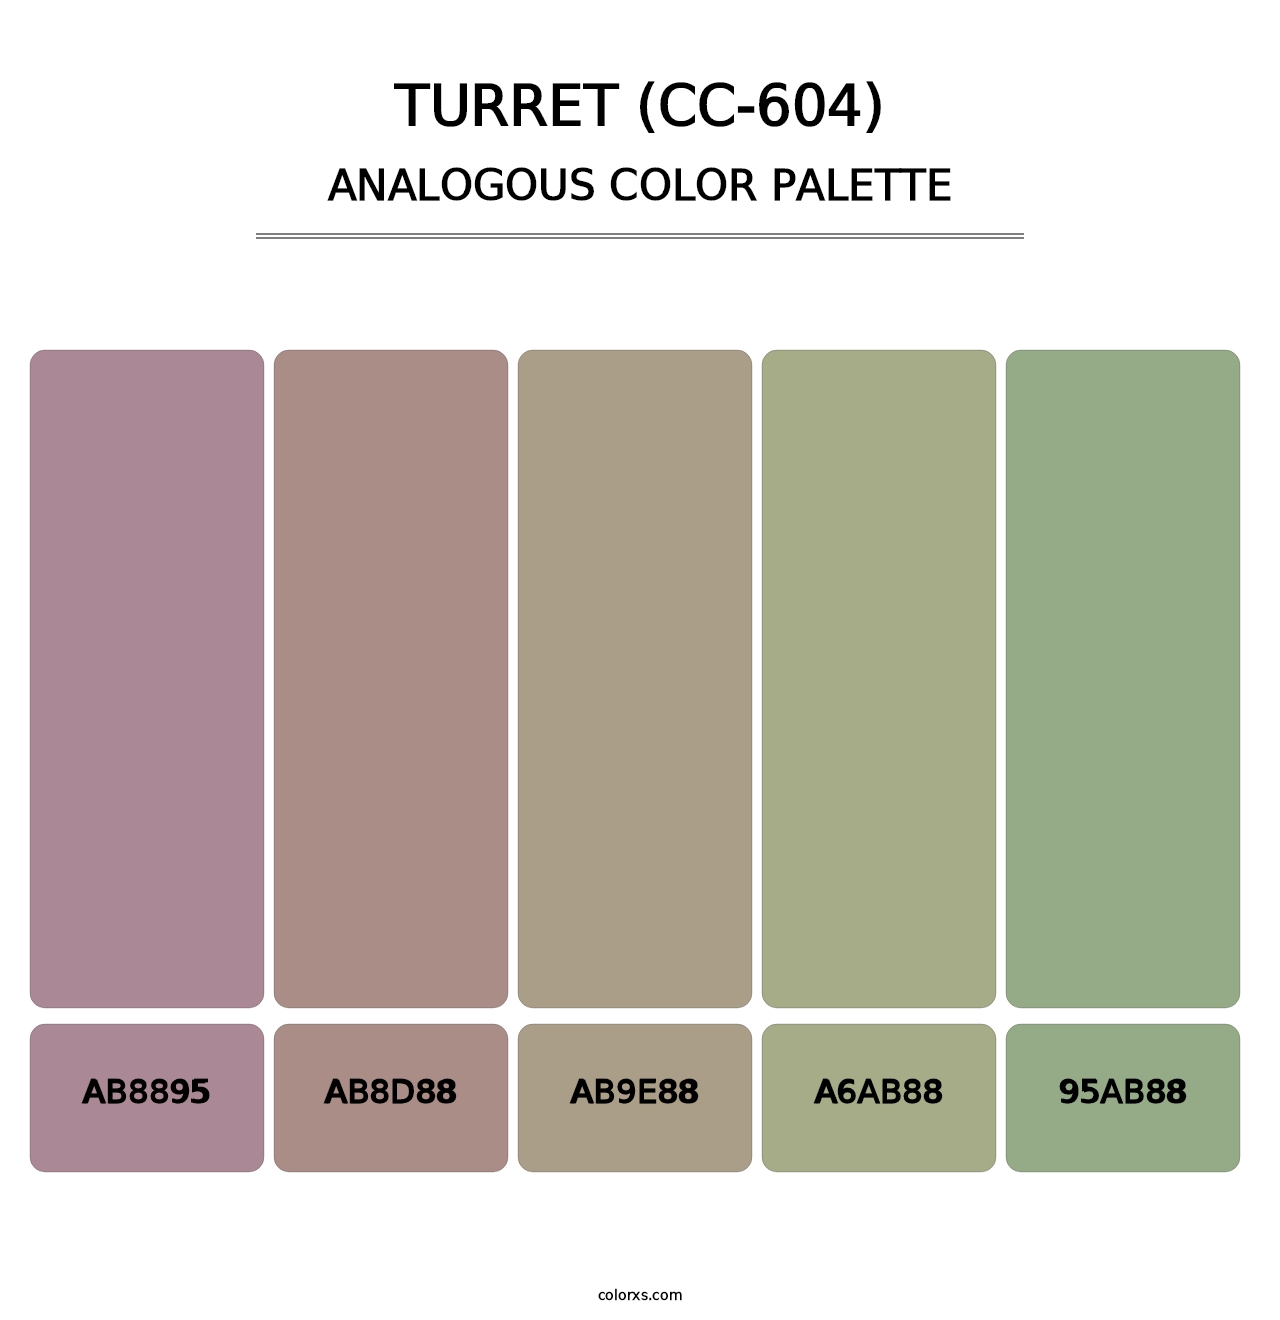 Turret (CC-604) - Analogous Color Palette